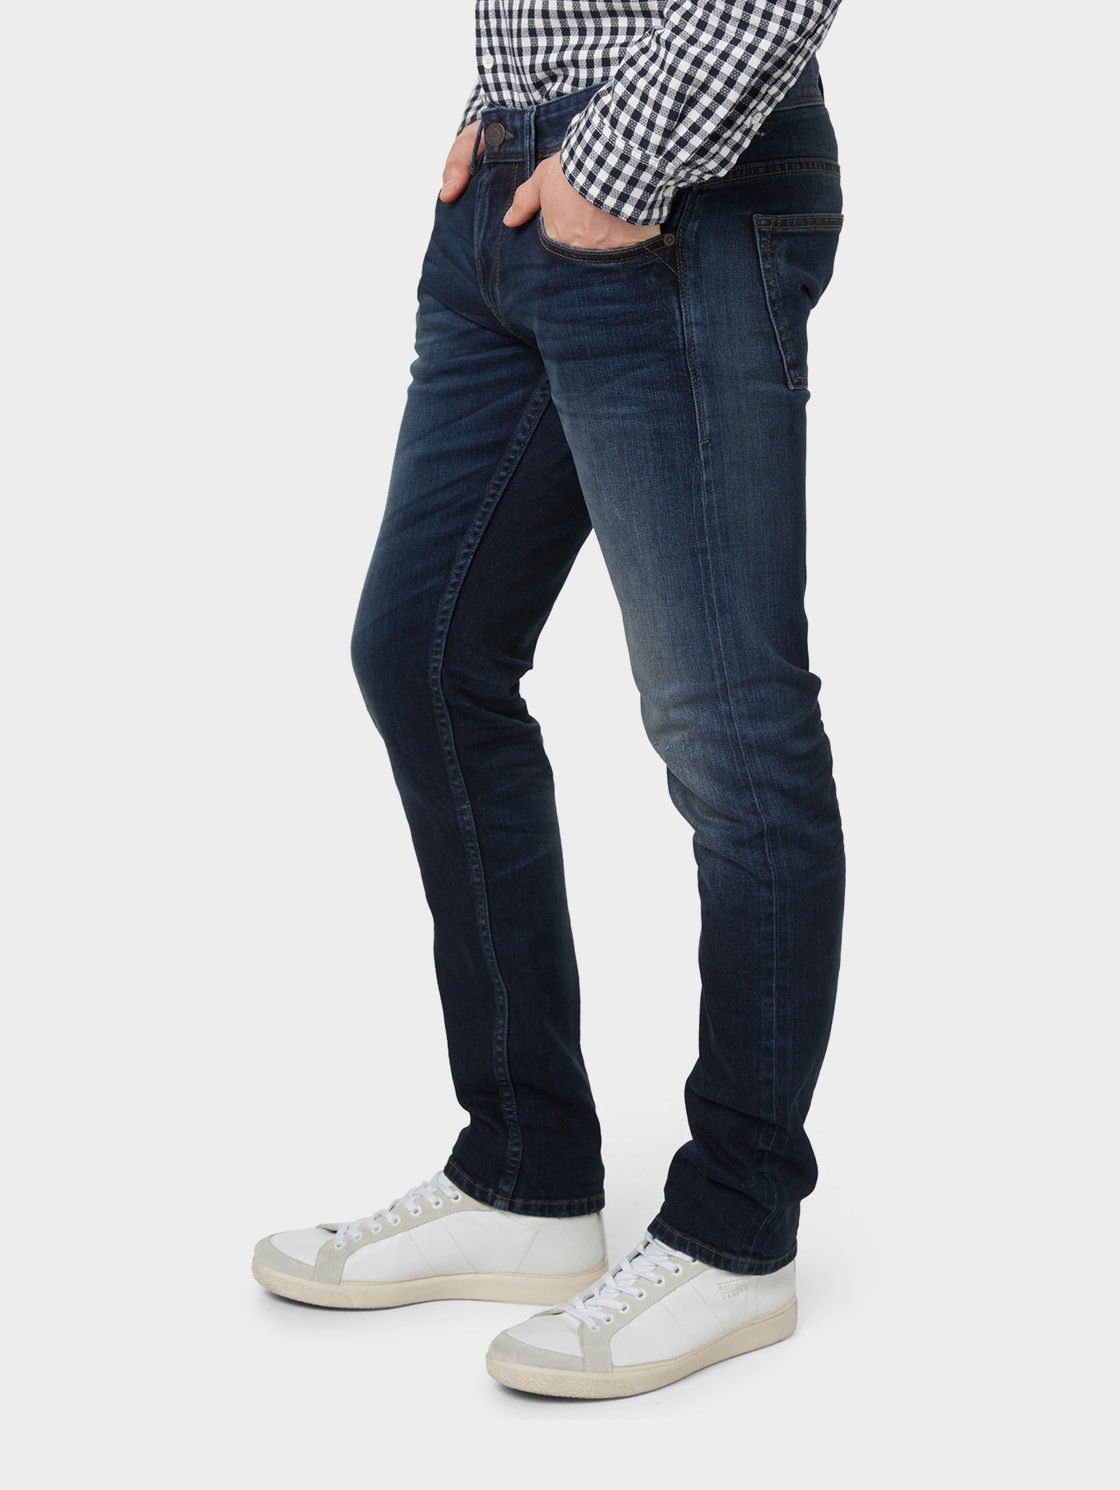 TOM TAILOR Slim-fit-Jeans Herren Selvage Stretch Denim Hose - Aedan 1053 -  W30, W31 online kaufen | OTTO